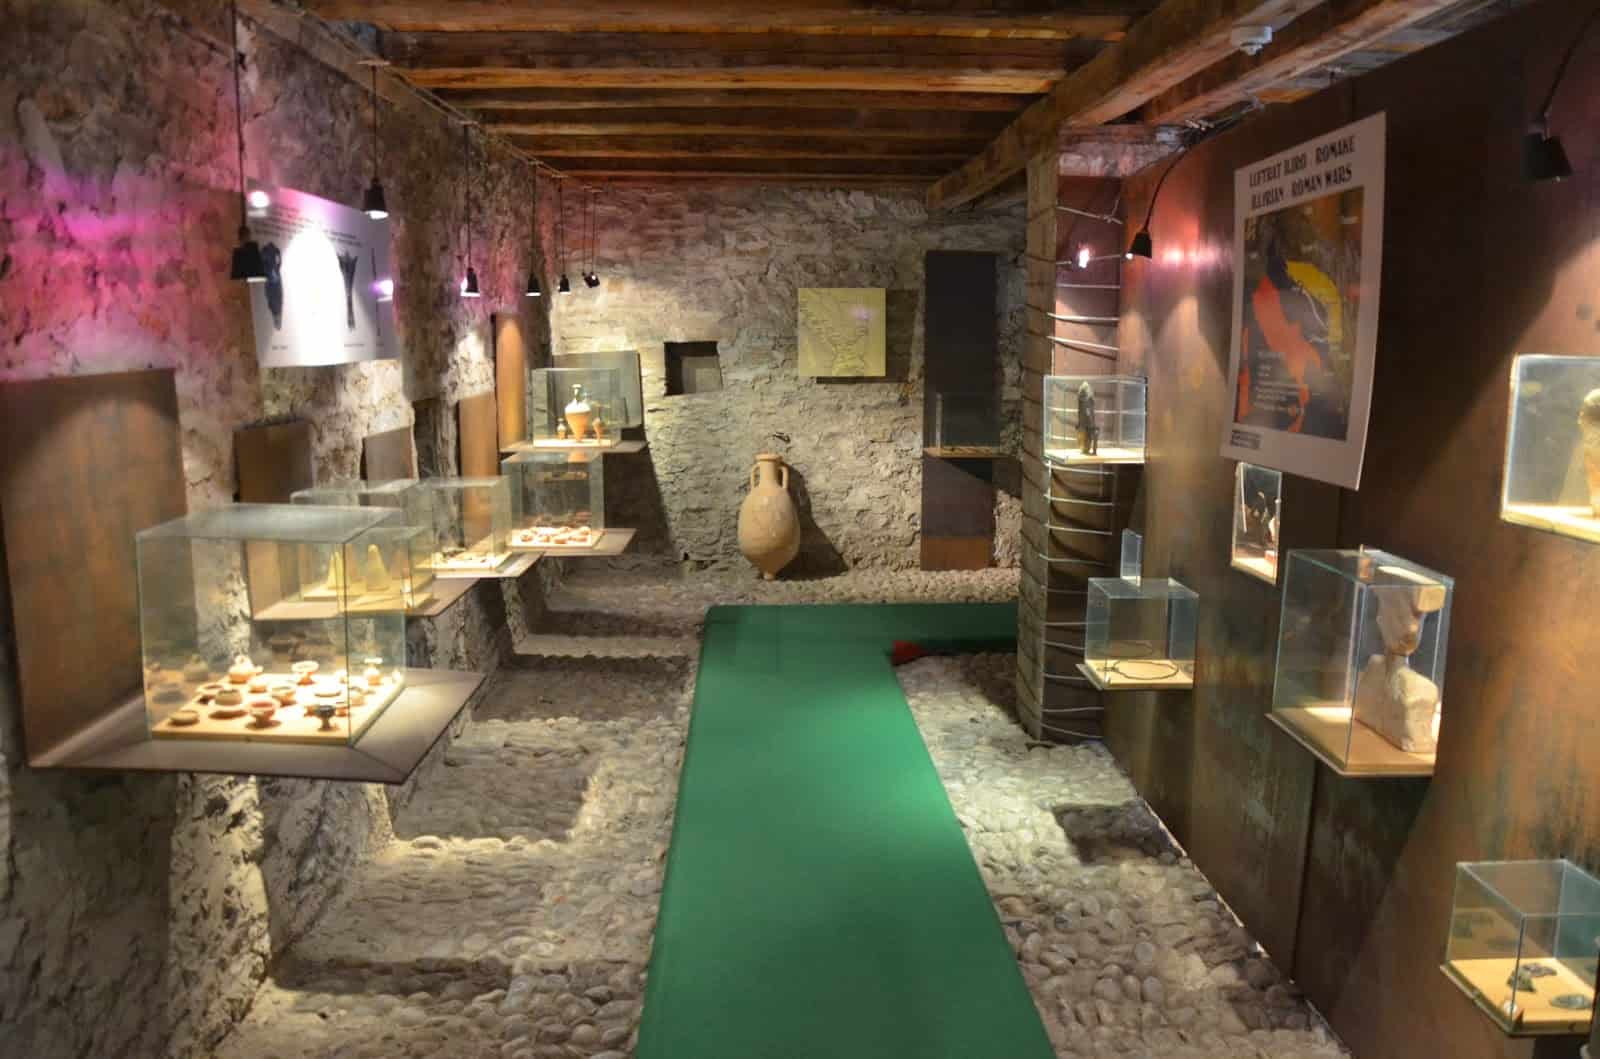 Archaeological section of the Shkodër Historical Museum in Shkodër, Albania